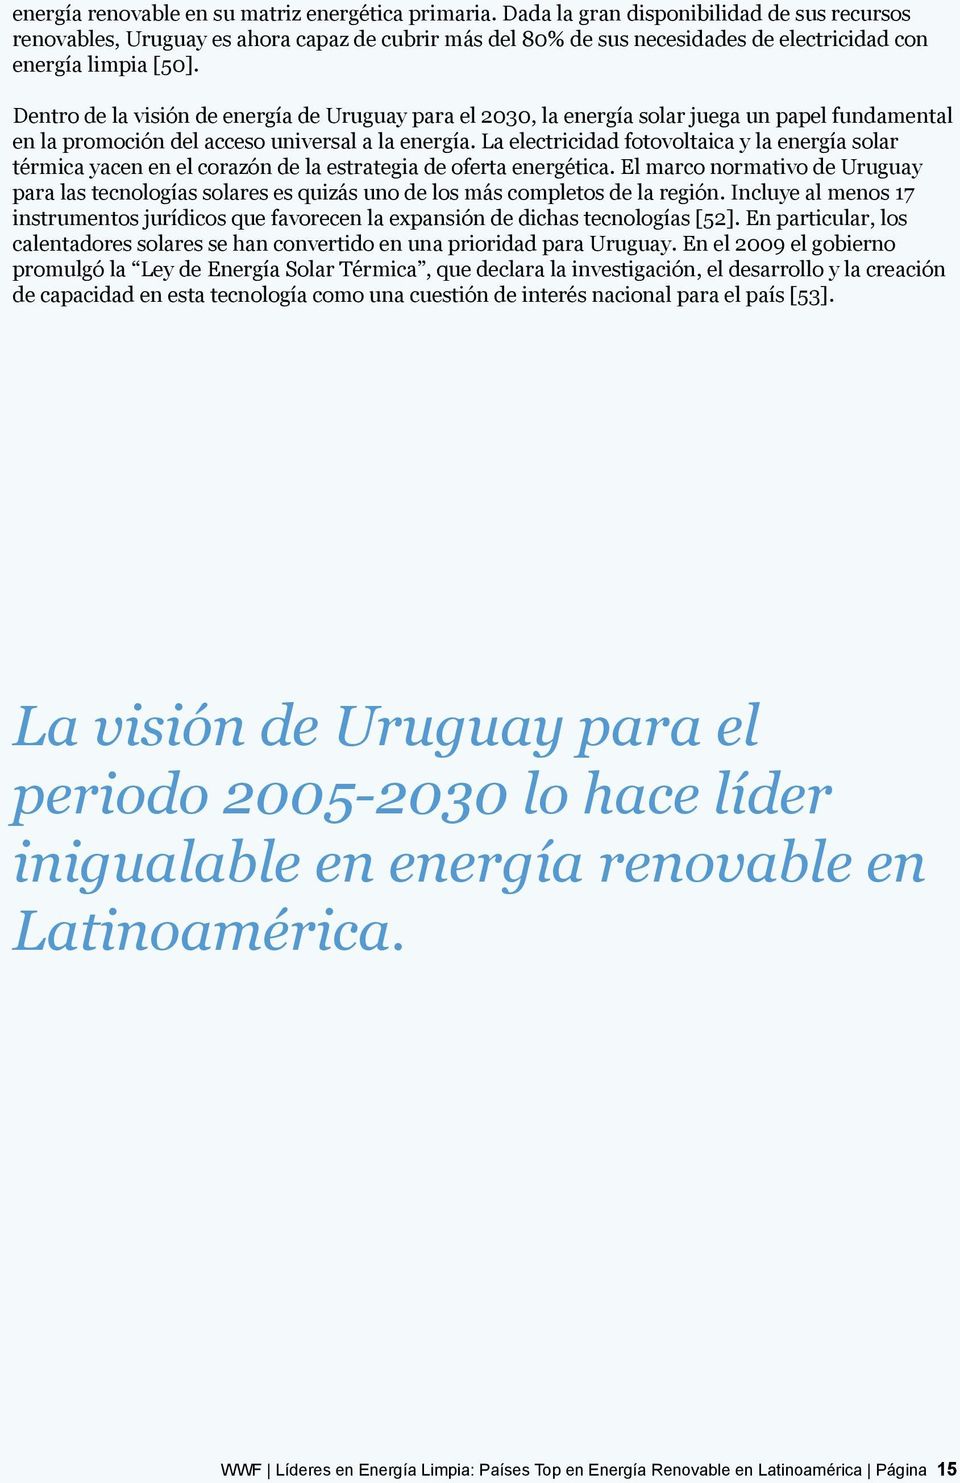 Dentro de la visión de energía de Uruguay para el 2030, la energía solar juega un papel fundamental en la promoción del acceso universal a la energía.